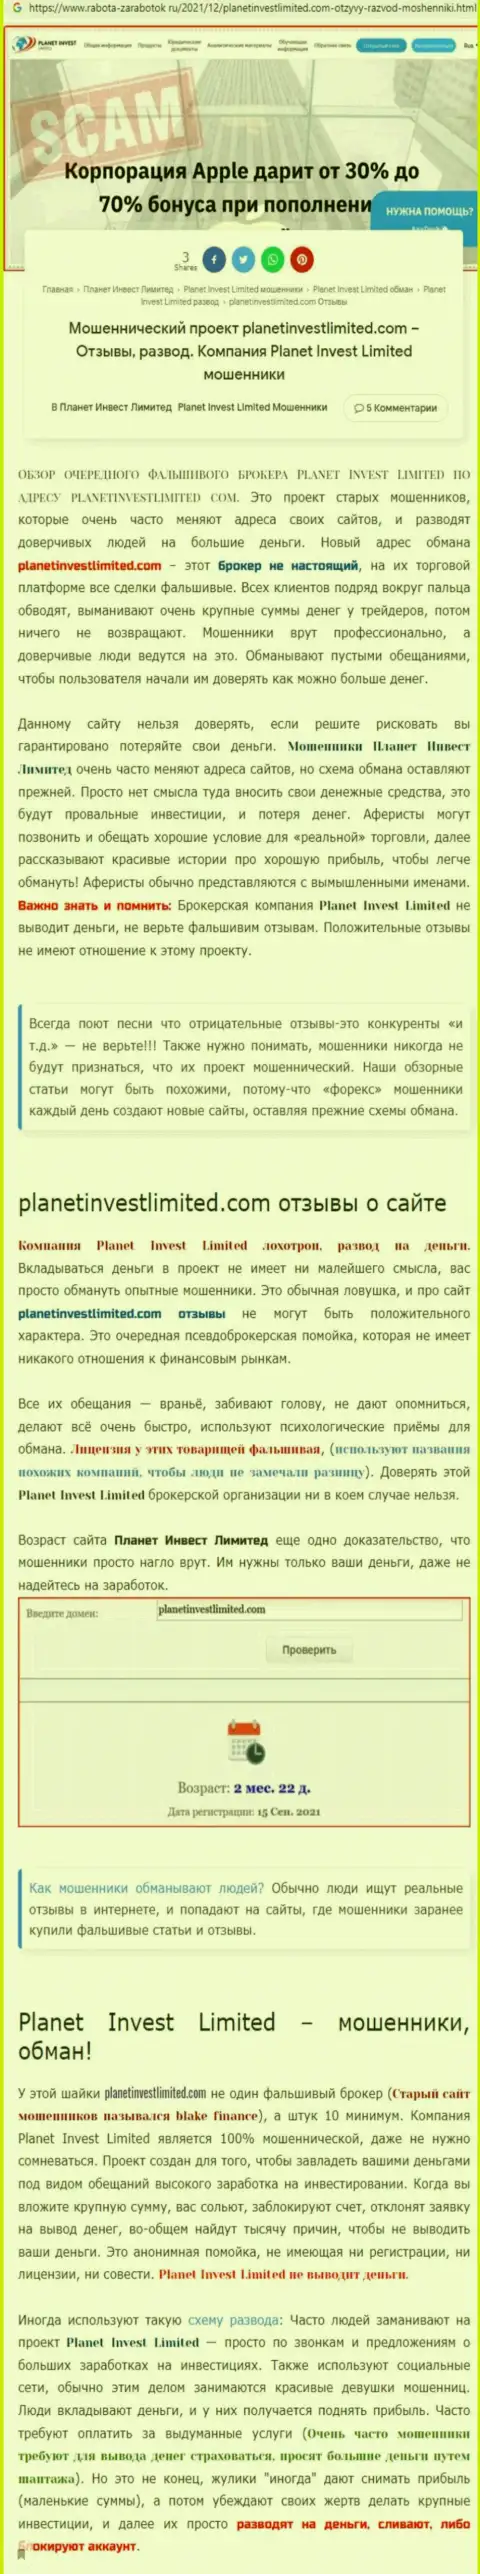 Не опасно ли связываться с Planet Invest Limited ??? (Обзор неправомерных деяний компании)